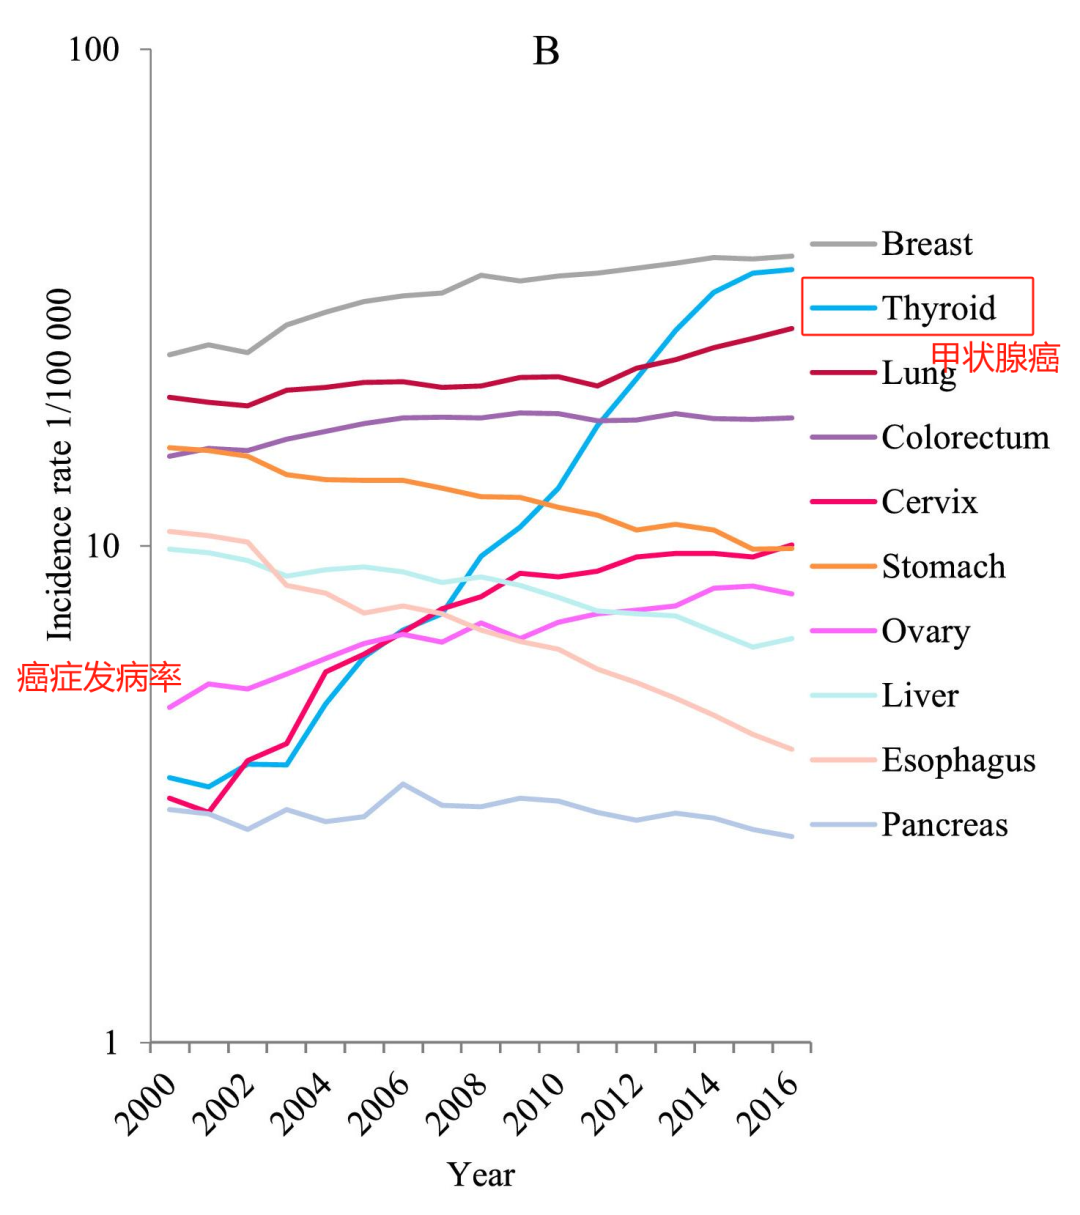 甲状腺癌的女性发病率增长在所有癌症中最为显著。（图/Cancer Incidence and Mortality in China, 2016）